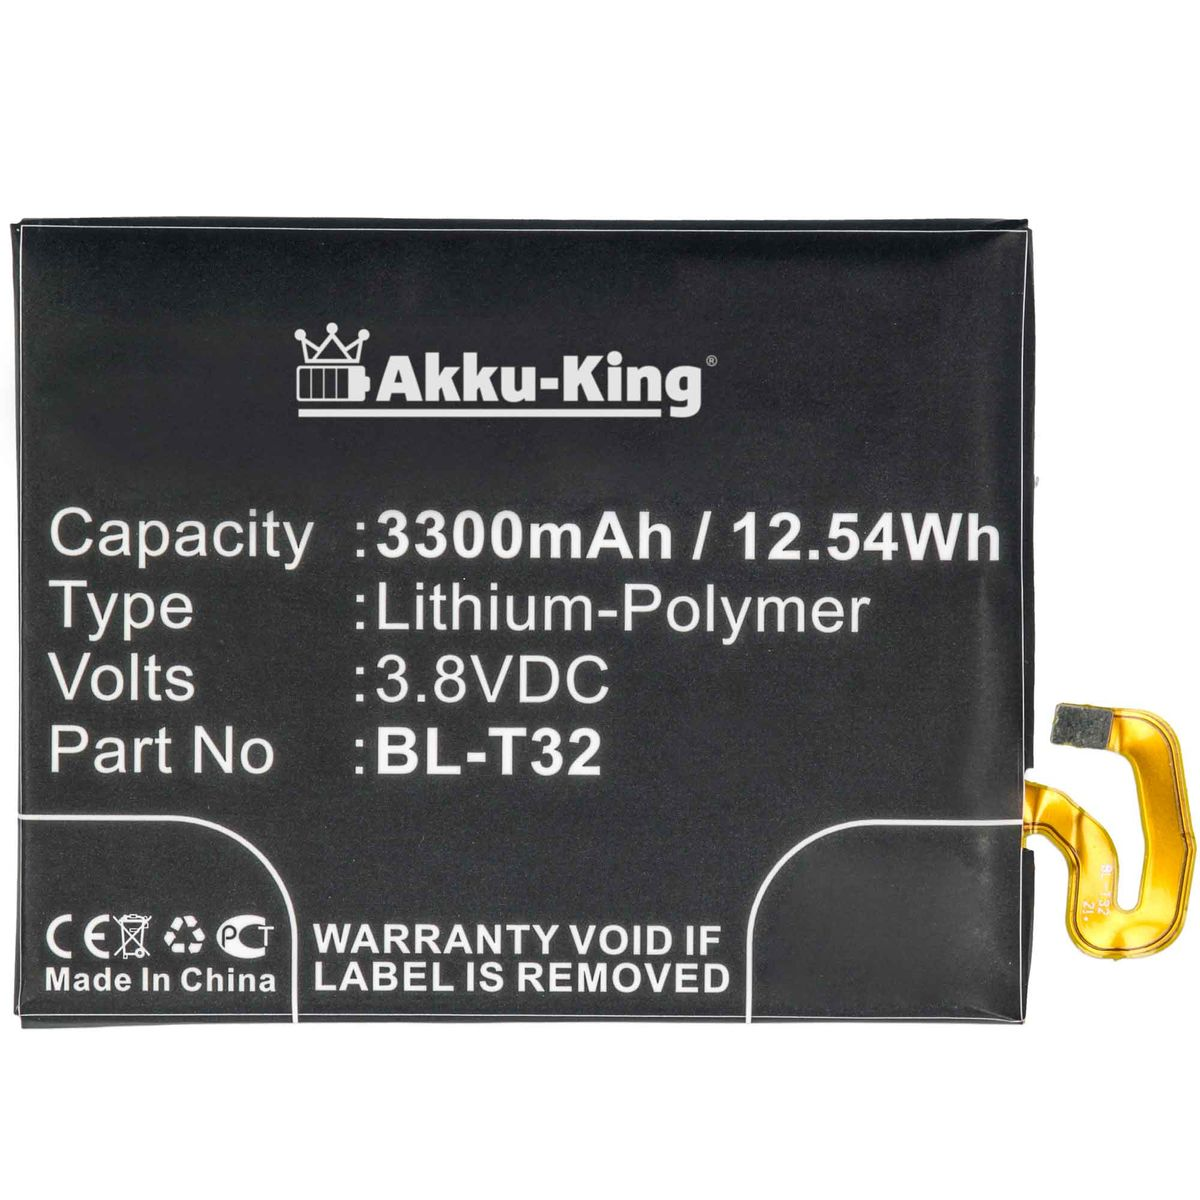 AKKU-KING Akku kompatibel mit BL-T32 Handy-Akku, LG 3.8 3300mAh Li-Polymer Volt